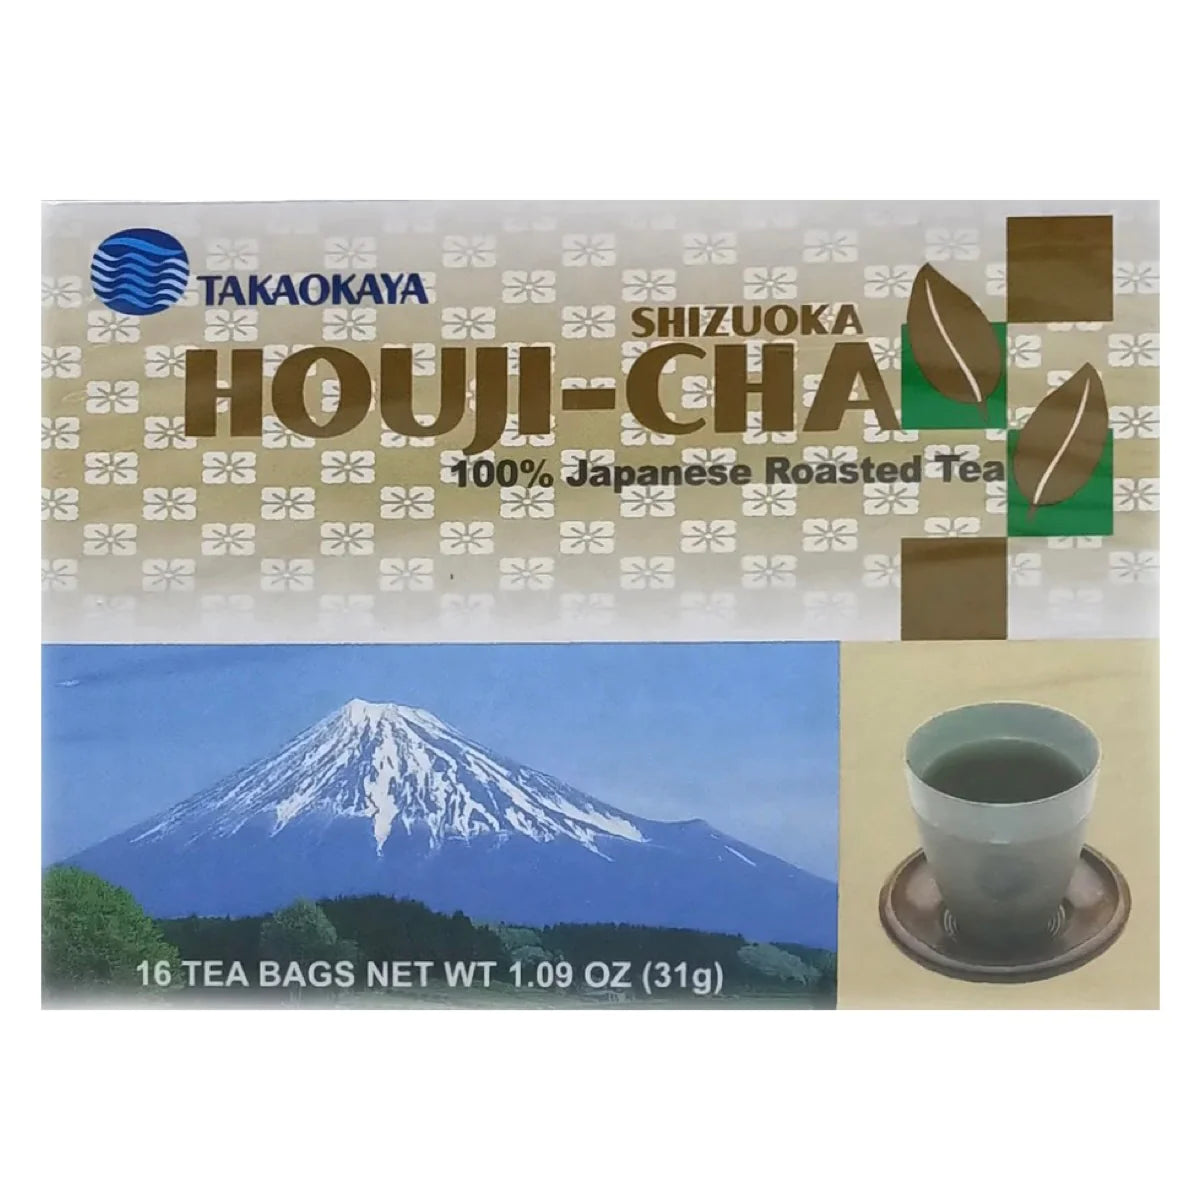 Takaokaya 100% Japanese Roasted Tea - 16 Bags